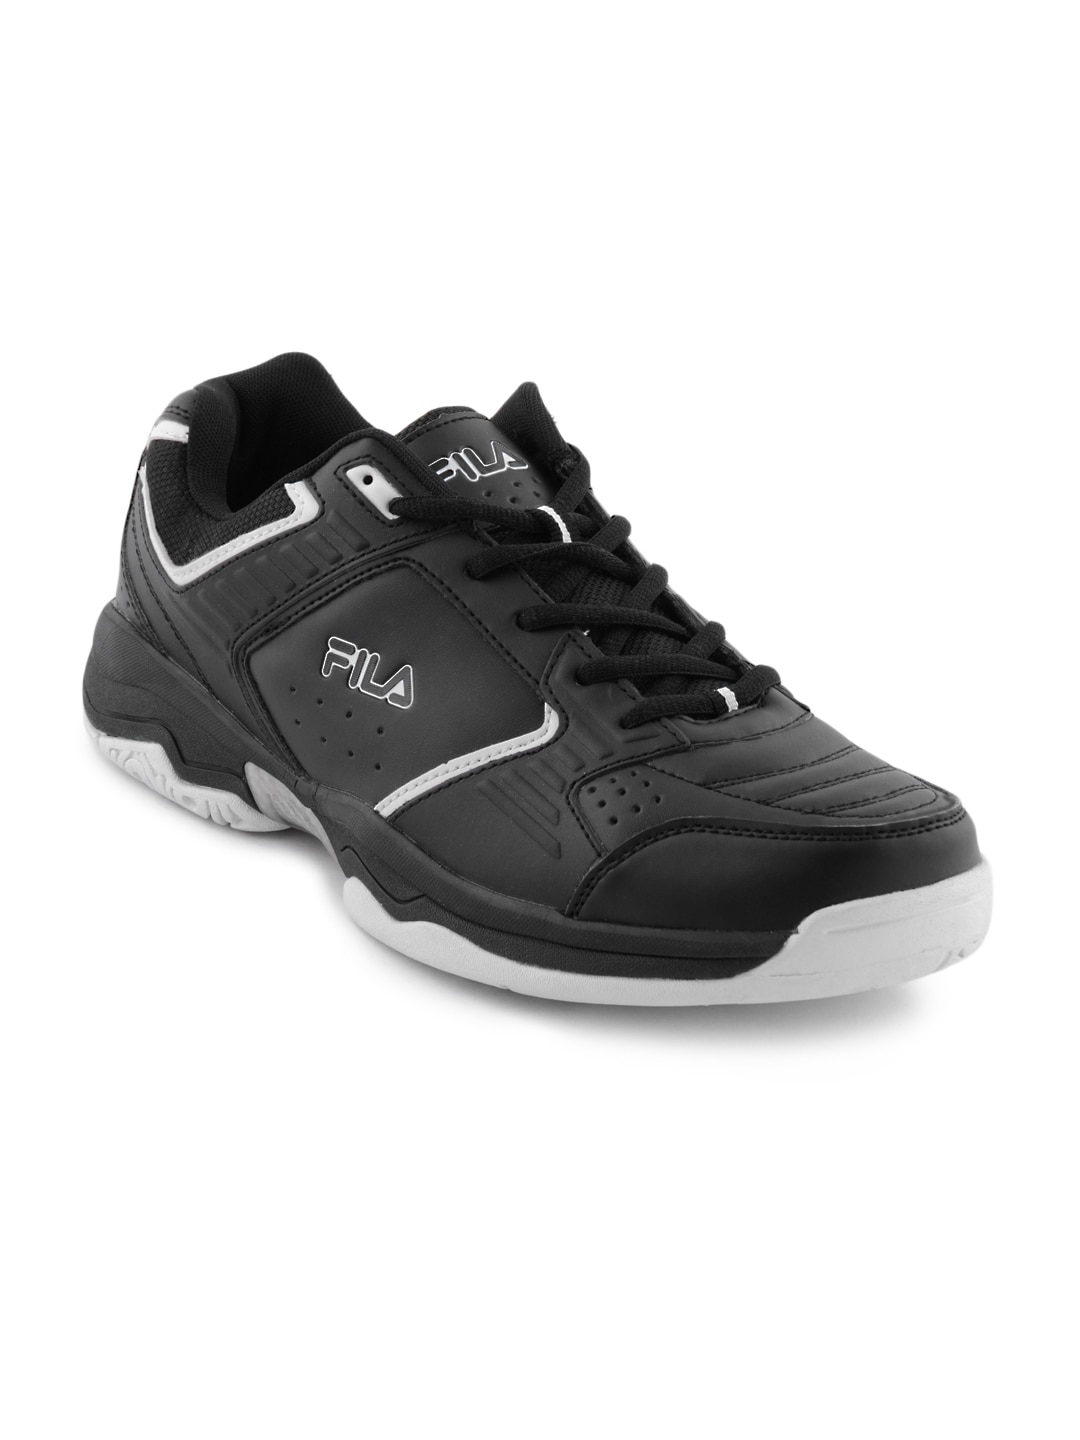 Fila Men Black Turf Sports Shoes